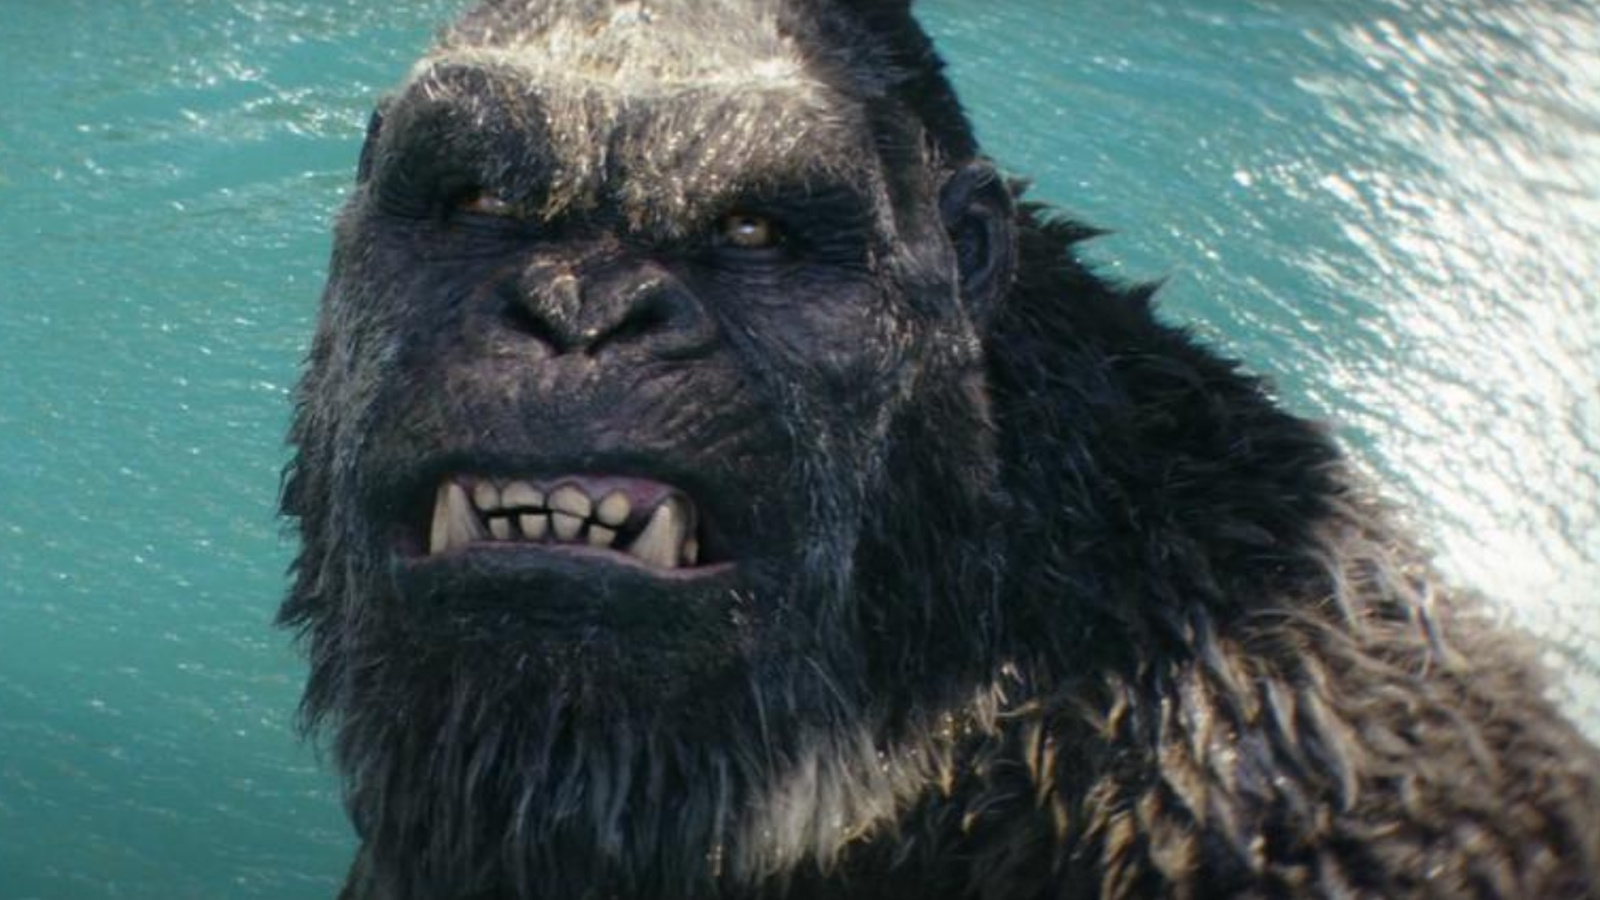 Godzilla e Kong - Il Nuovo Impero supera ogni aspettativa, debutto da 80 milioni al box office USA